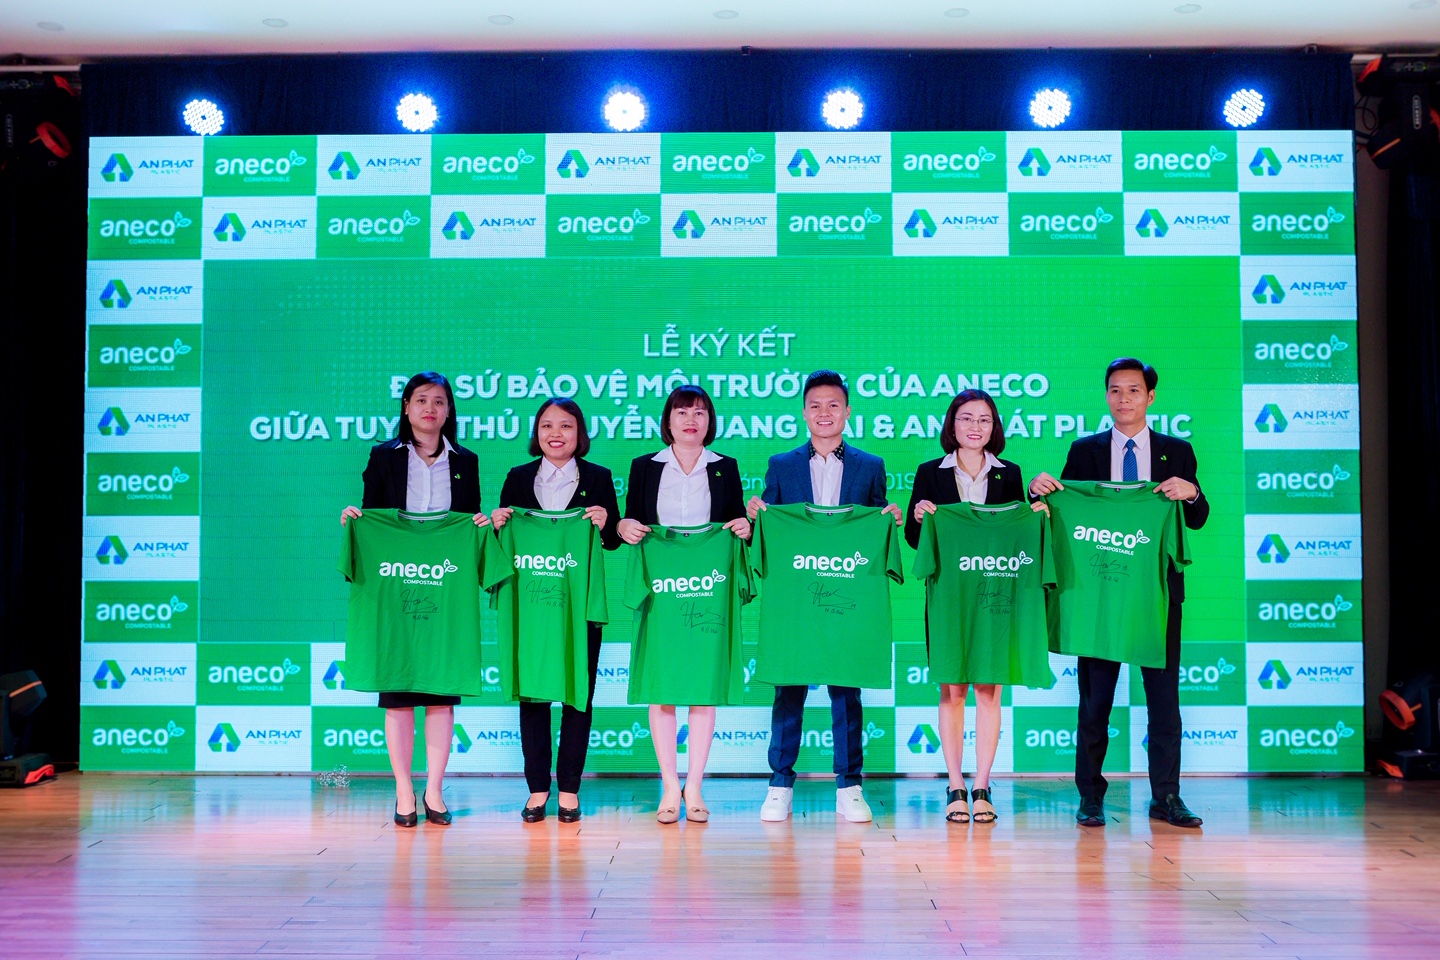 Tuyển thủ Quang Hải chính thức trở thành Đại sứ bảo vệ môi trường của AnEco